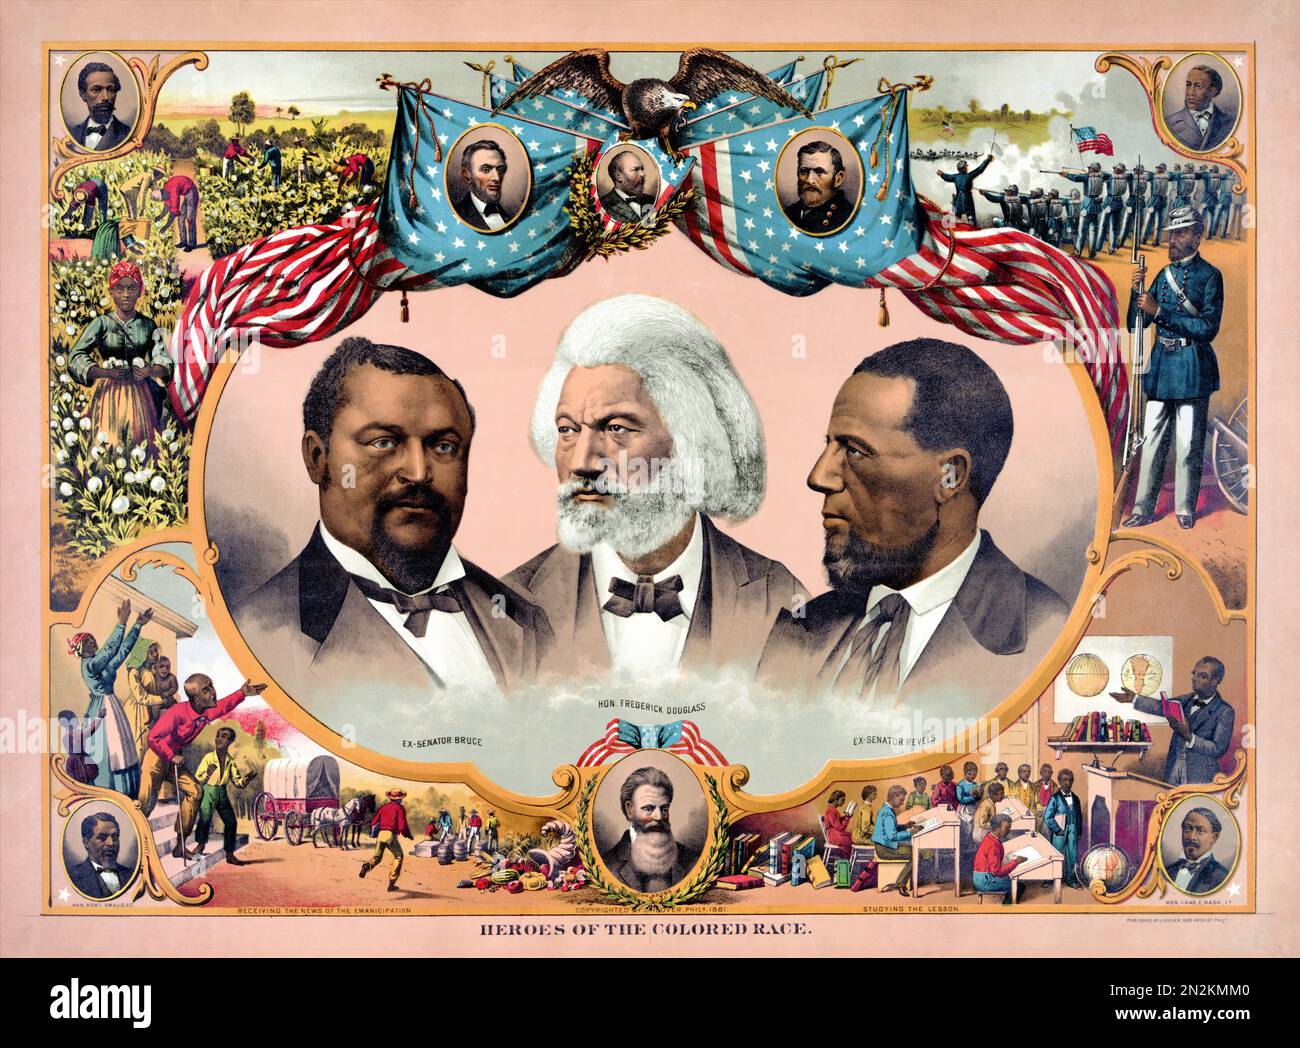 Helden der farbigen Rasse. Porträts von Blanche Kelso Bruce, Frederick Douglass und Hiram Rhoades feiern. Künstler unbekannt. Poster wurde 1881 in den USA veröffentlicht. Stockfoto